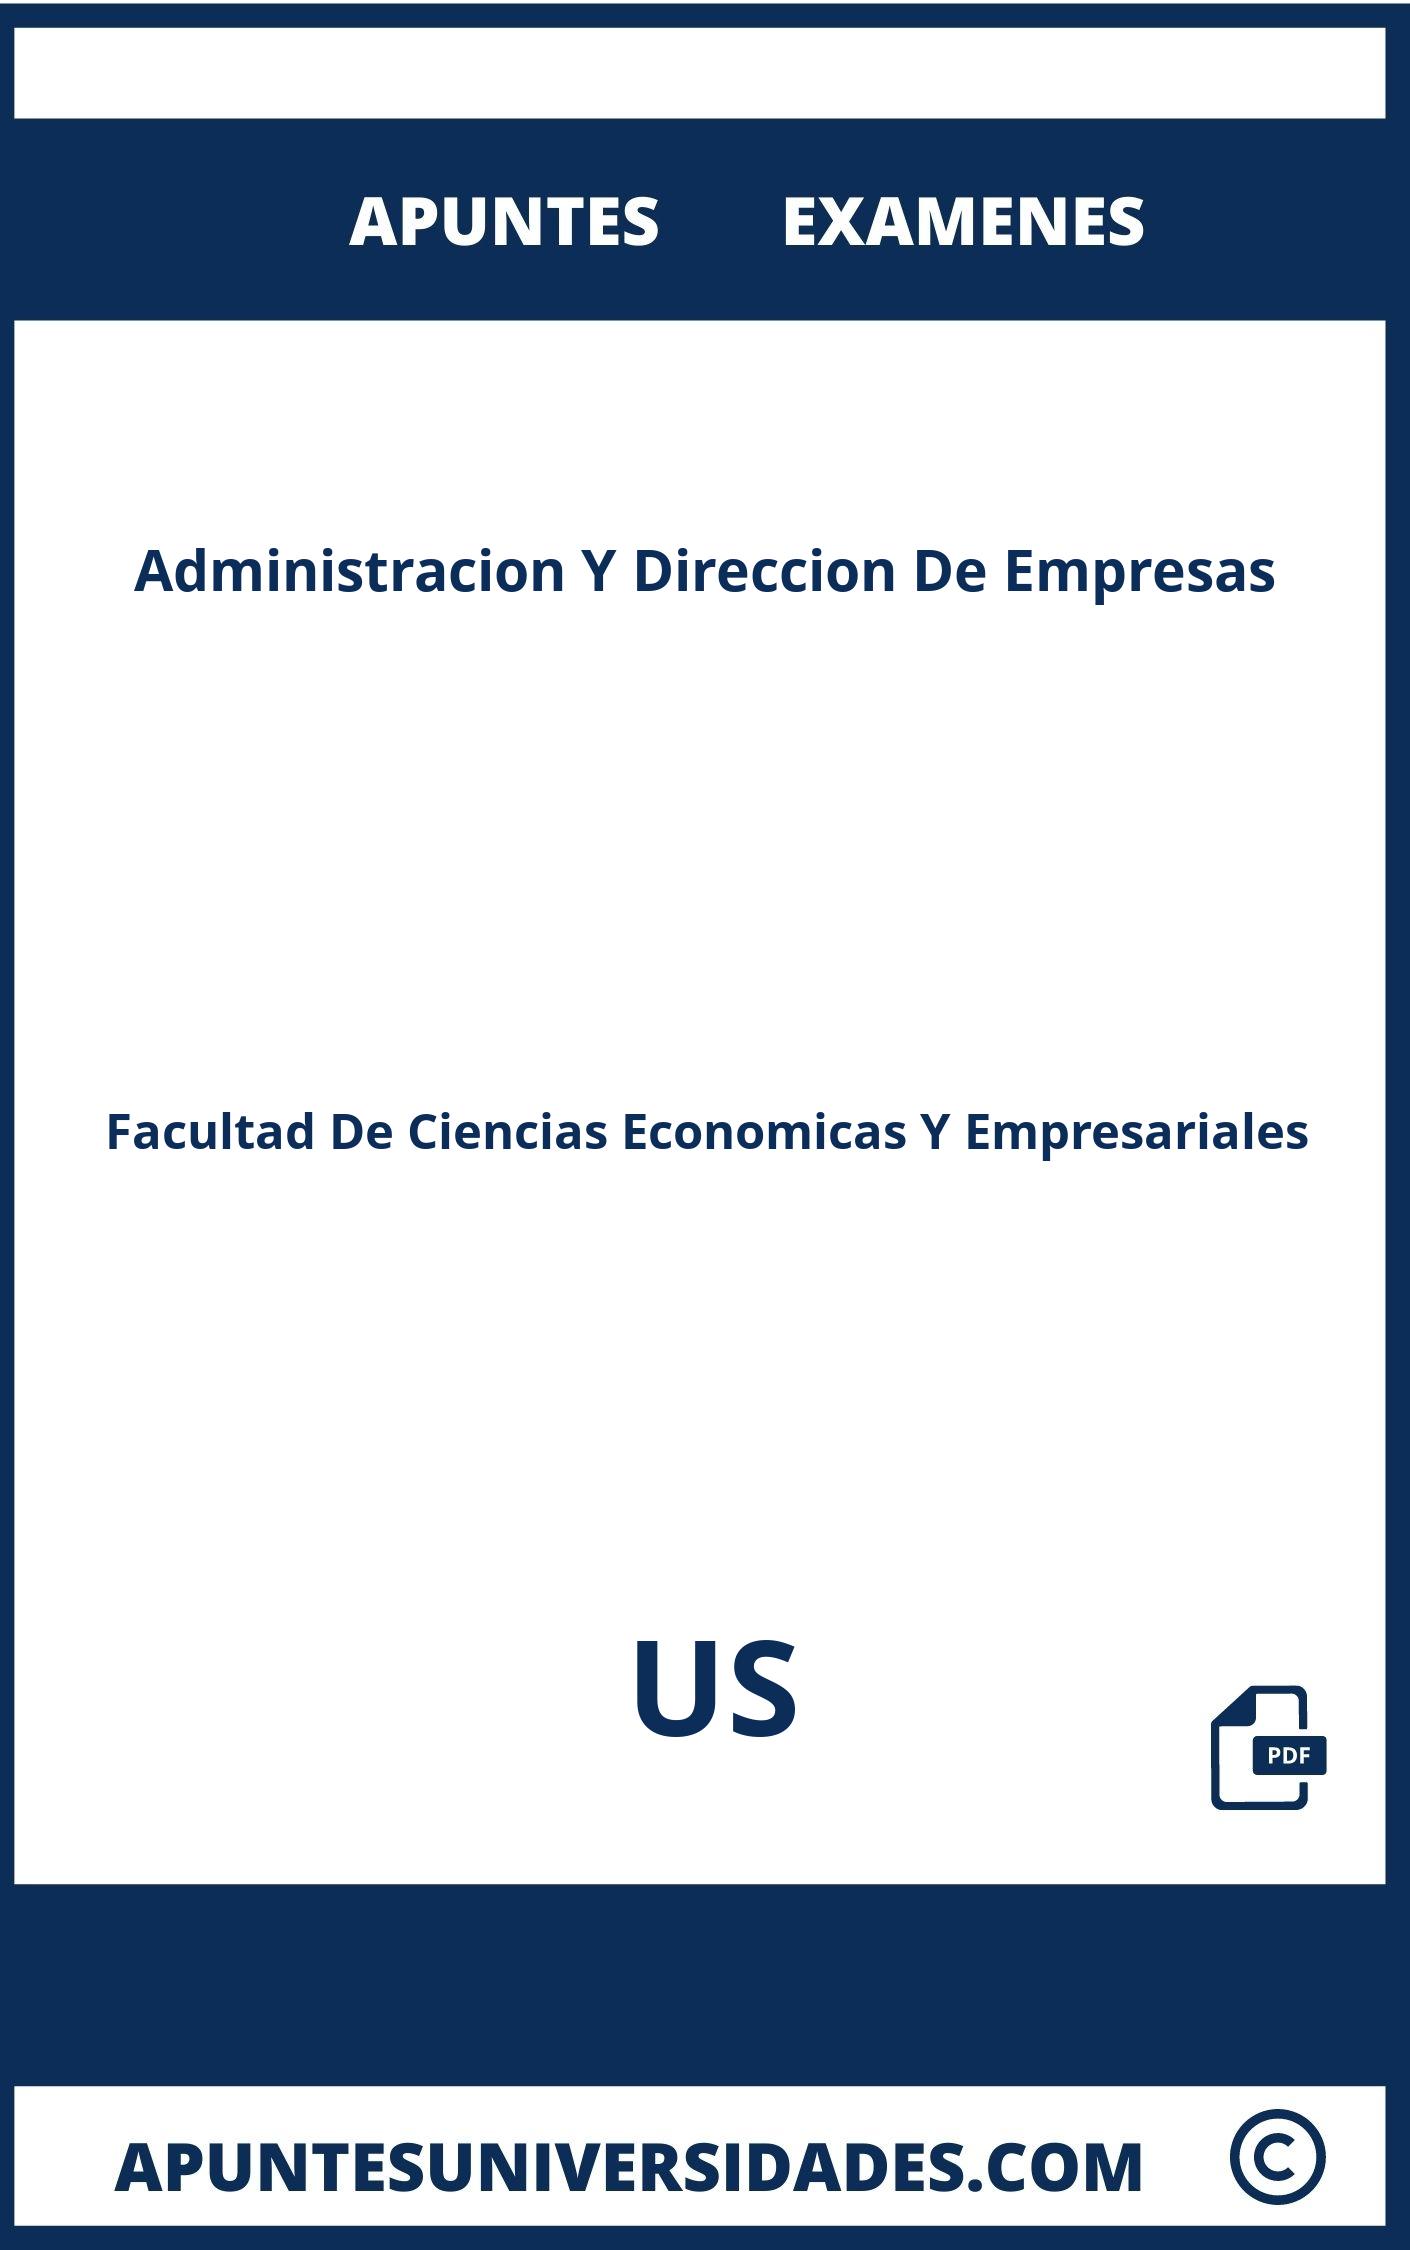 Apuntes y Examenes de Administracion Y Direccion De Empresas US